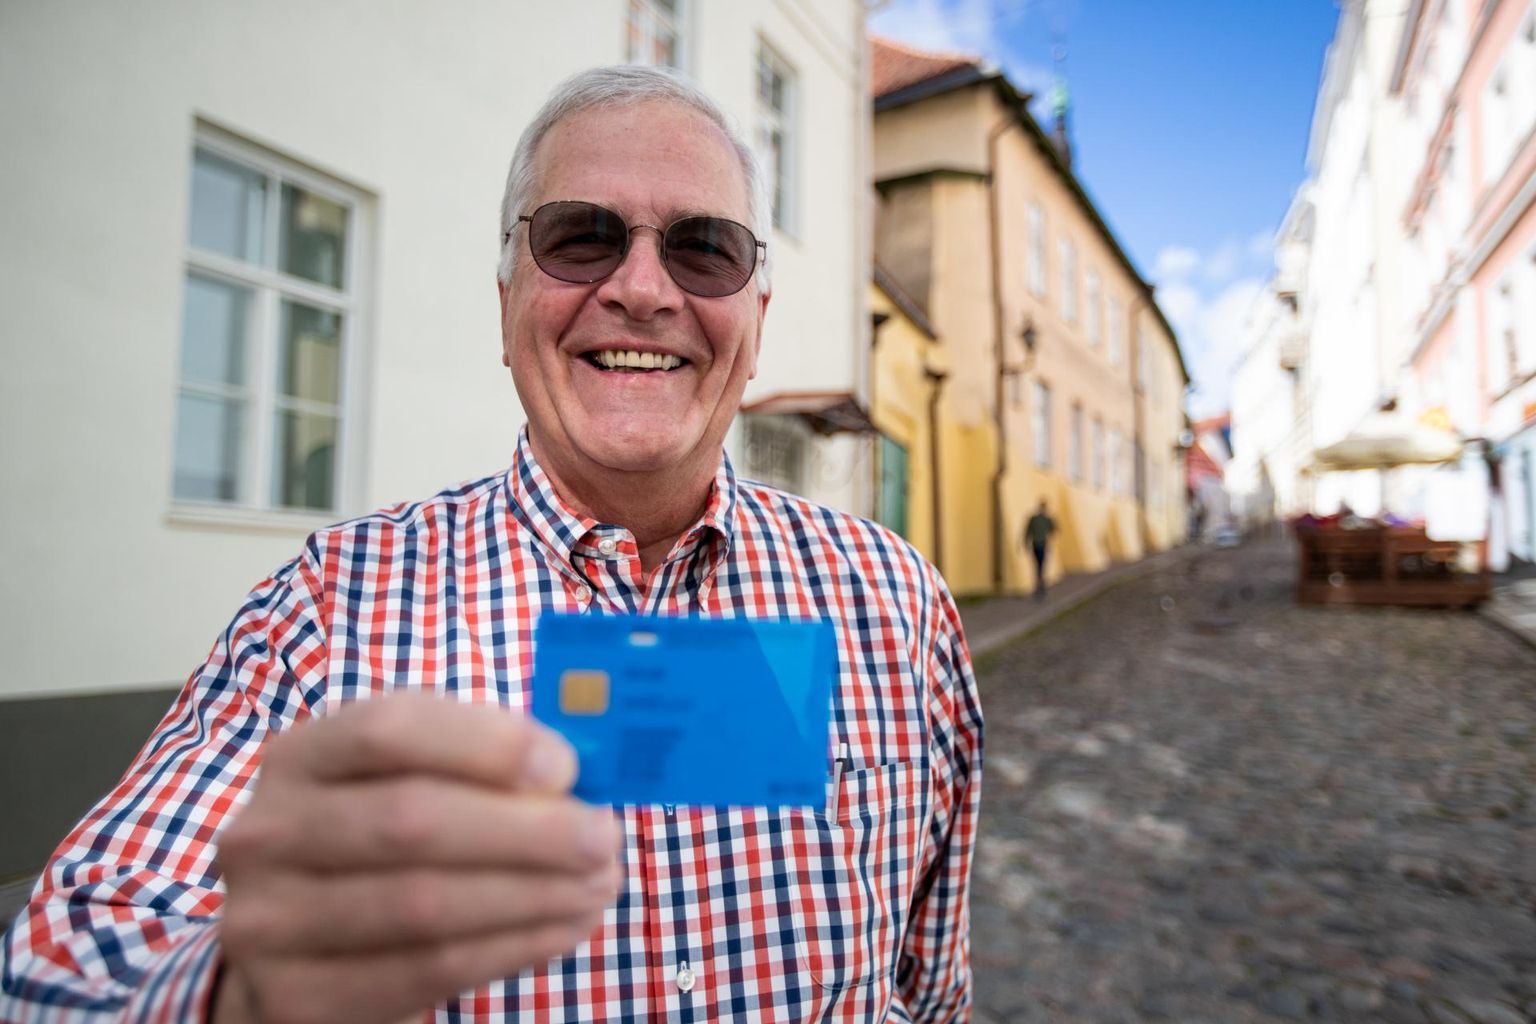 Ameeriklane Michael Keller, maailmakuulsa Stanfordi ülikooli raamatukogude ja kirjastuste juht, üks Eesti 58 000 e-residendist, näitab Tallinnas oma e-residendi sinist kaarti.